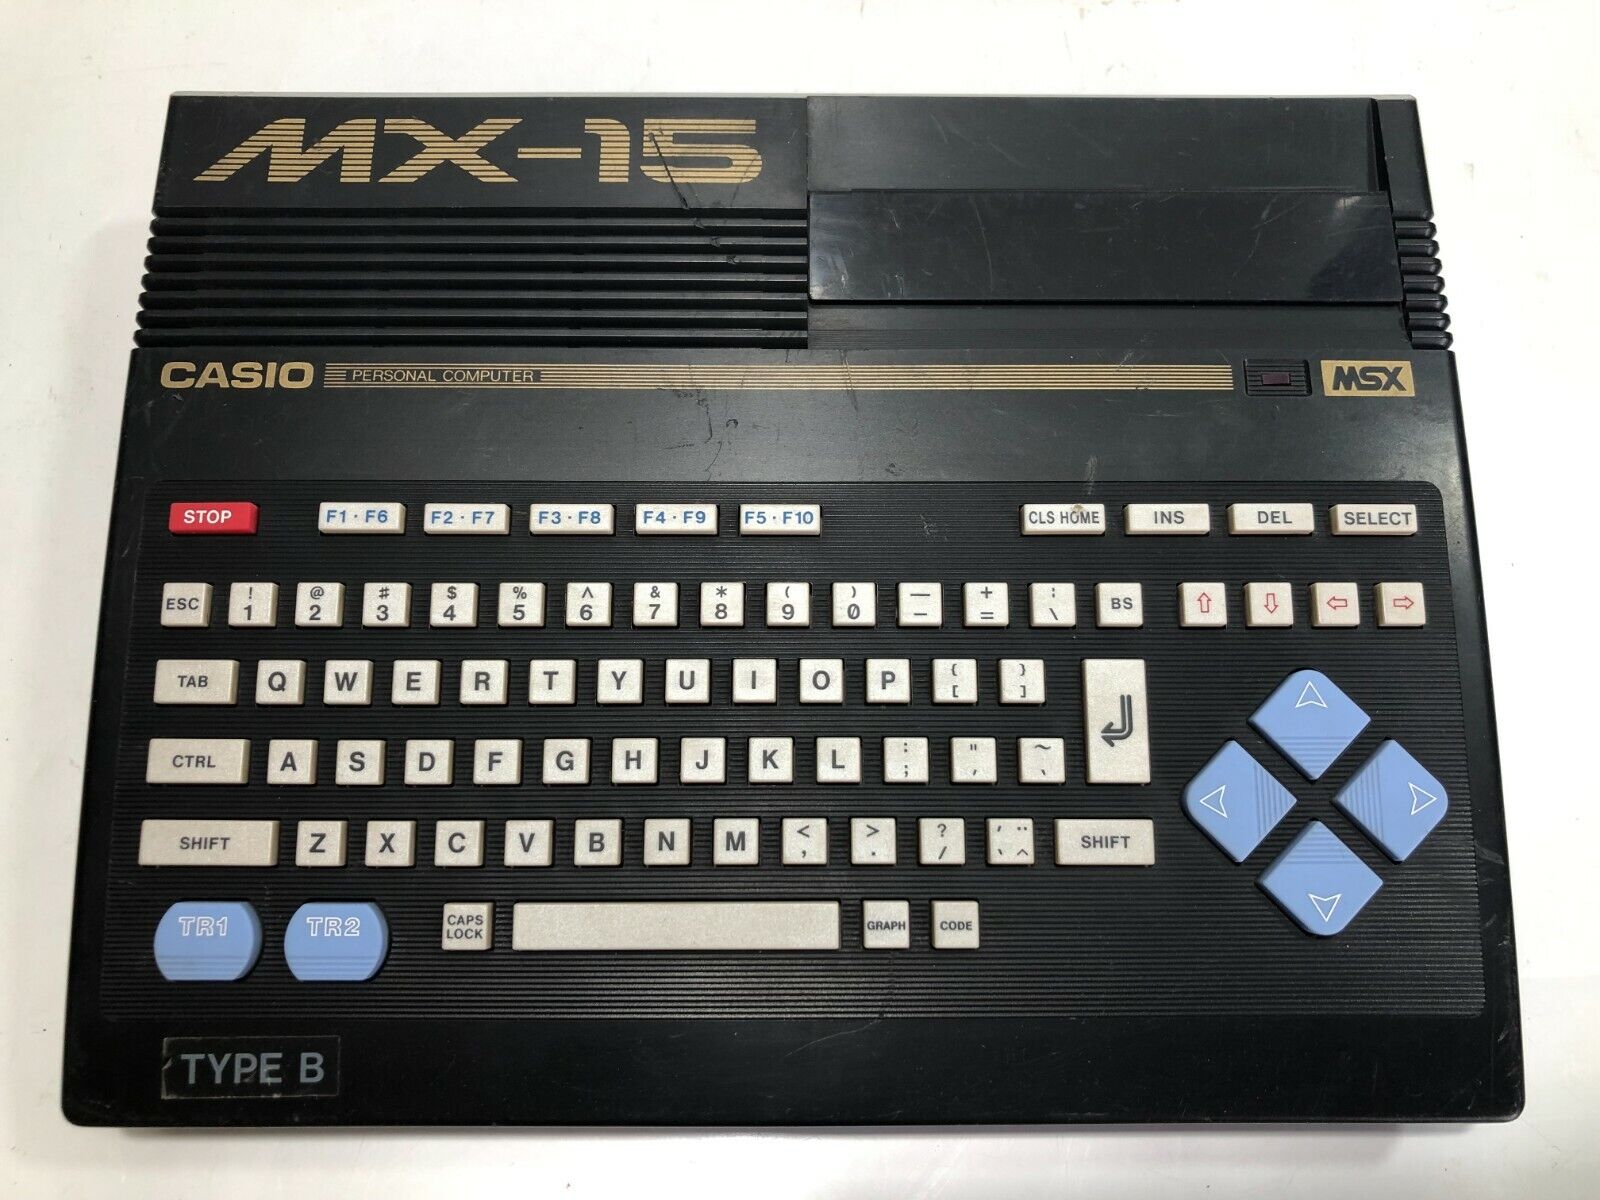 Casio MSX MX-15 Personal Computer Vintage Japan